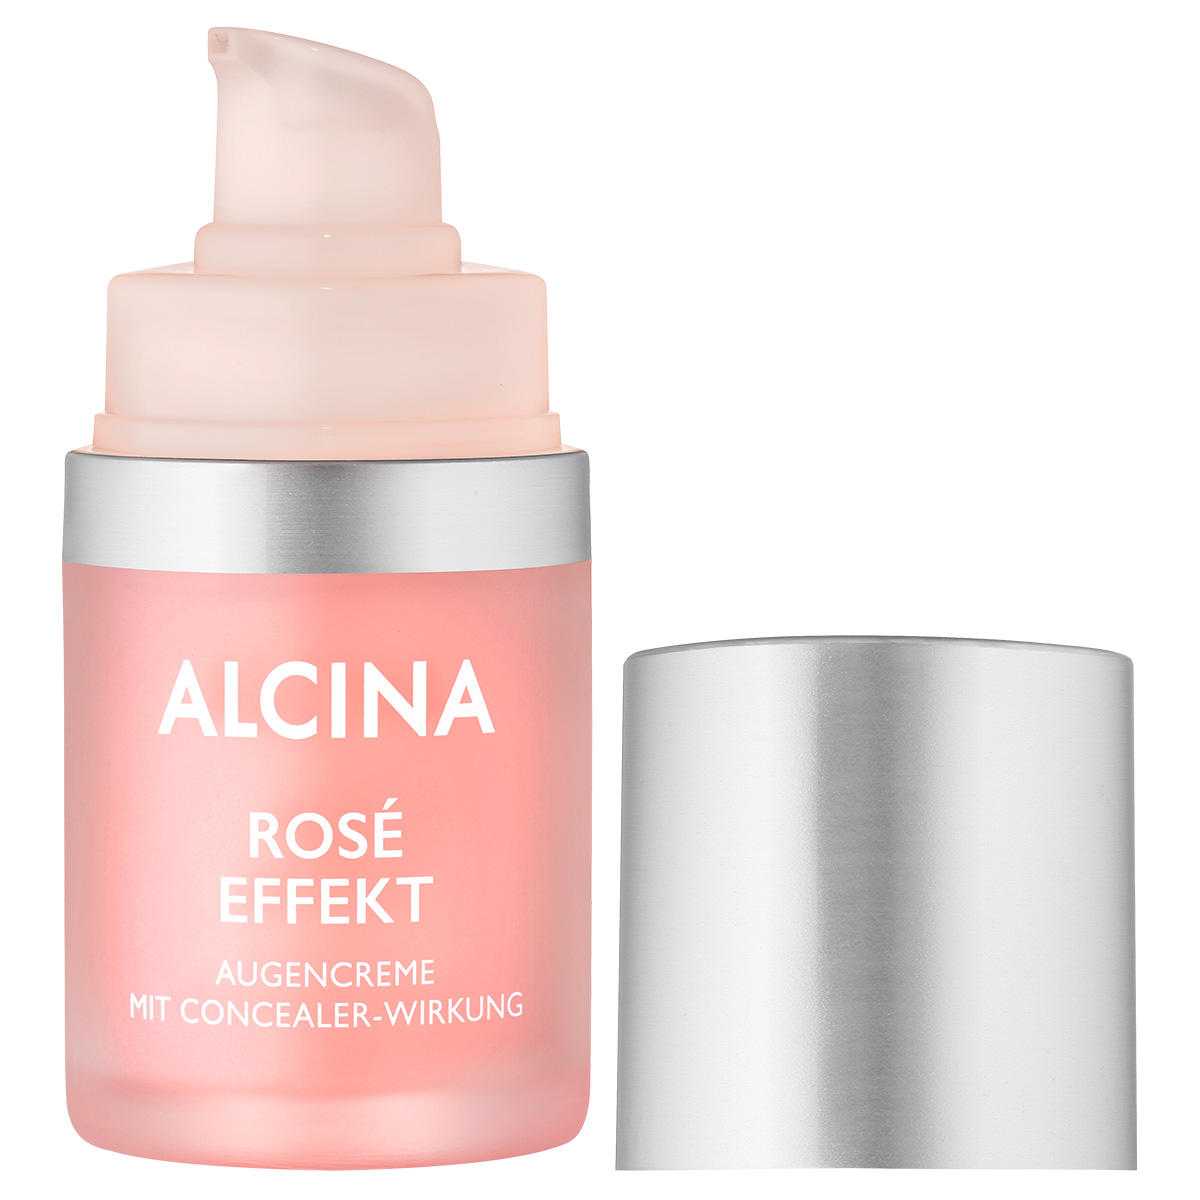 Alcina Rosé Effekt Eye cream 15 ml - 4